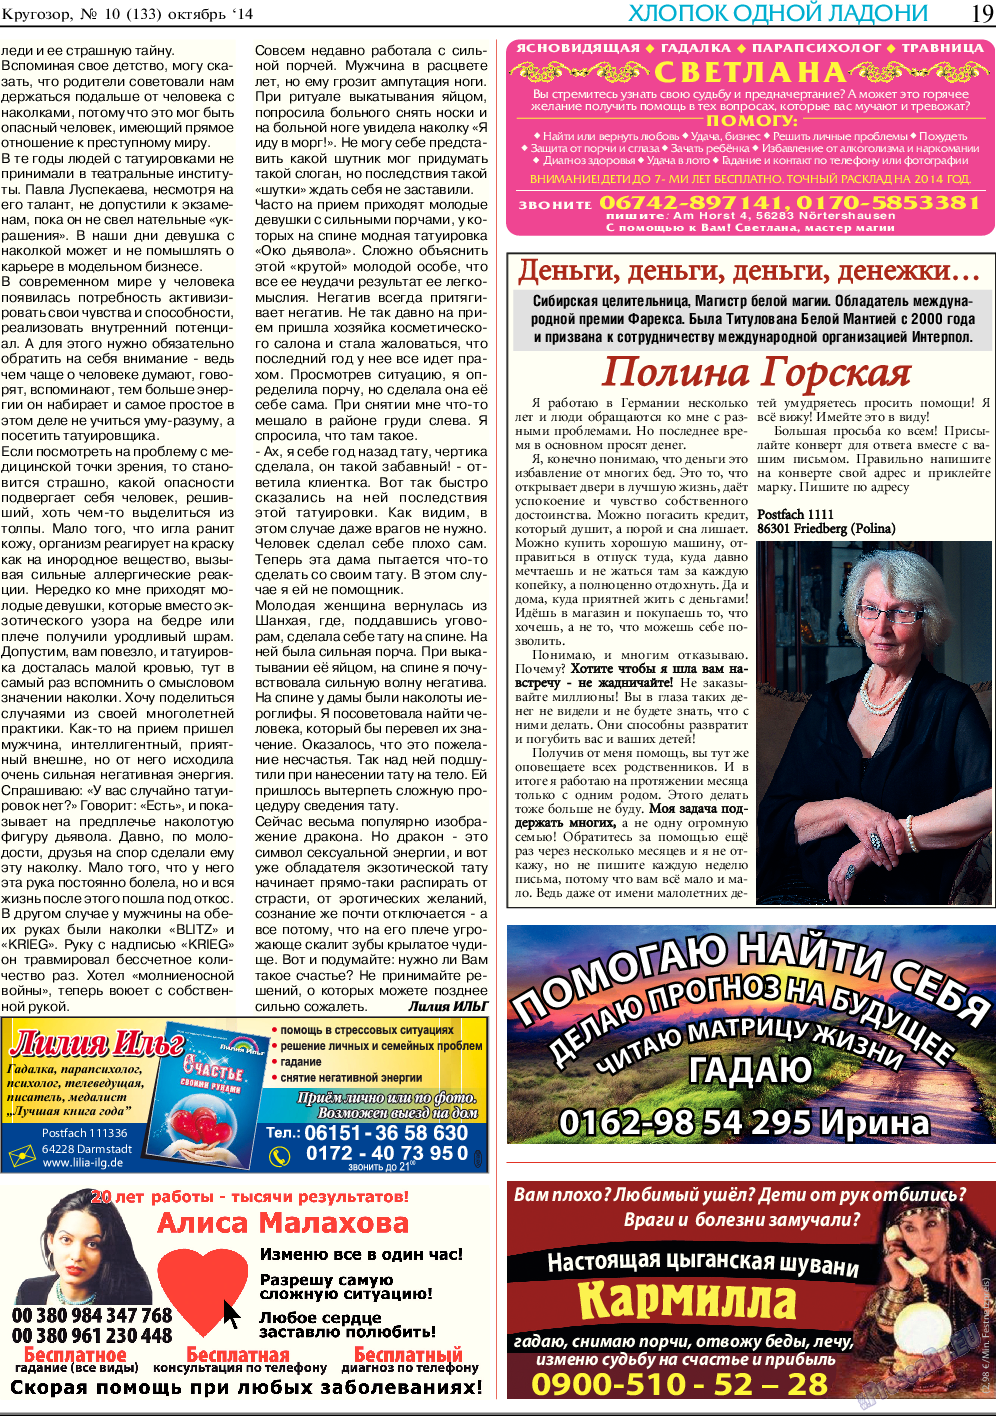 Кругозор, газета. 2014 №10 стр.19